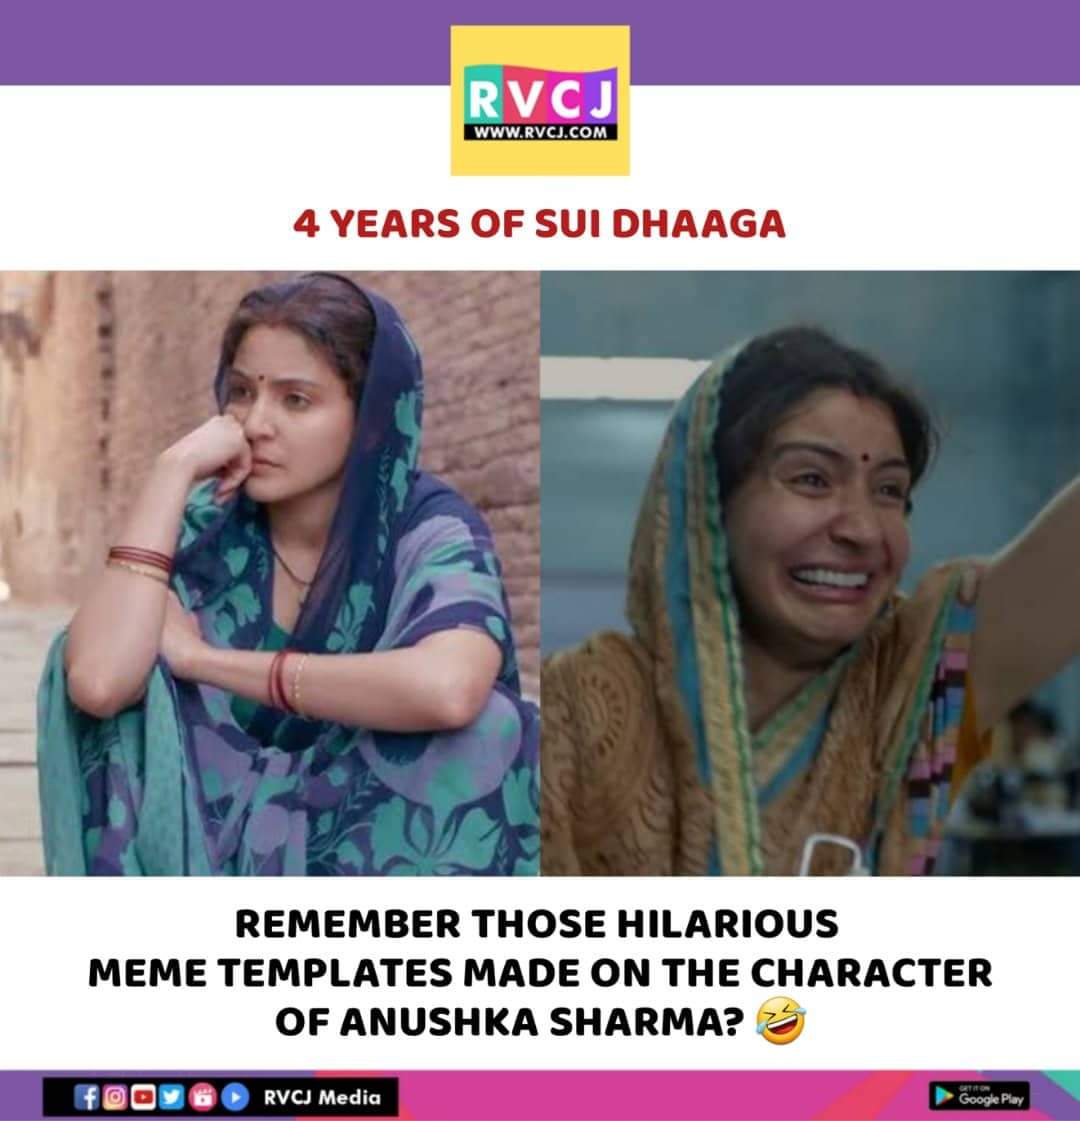 4 Years of Sui Dhaaga!

#suidhaaga #anushkasharma #rvcjmovies #rvcjinsta #varundhawan